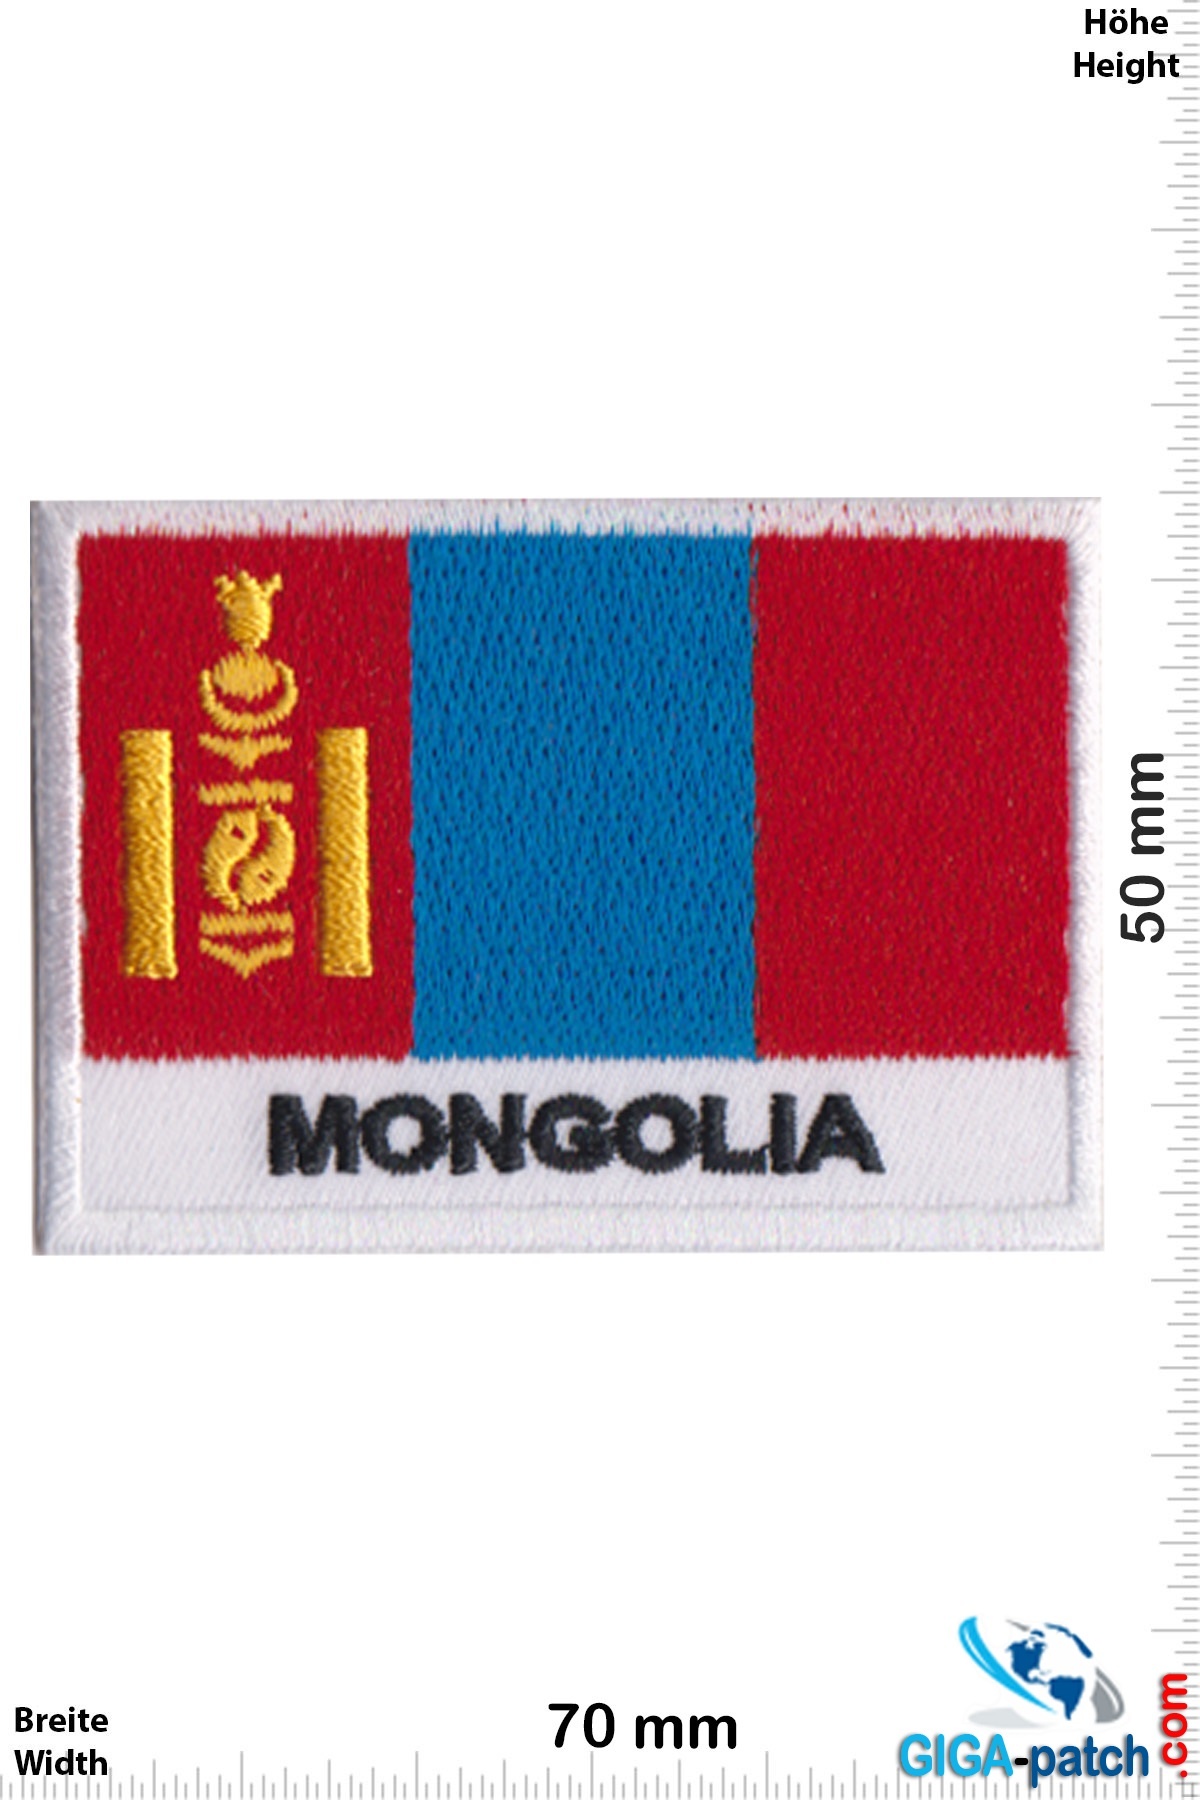 Mongolia Mongolia - Mongolei - Flagge